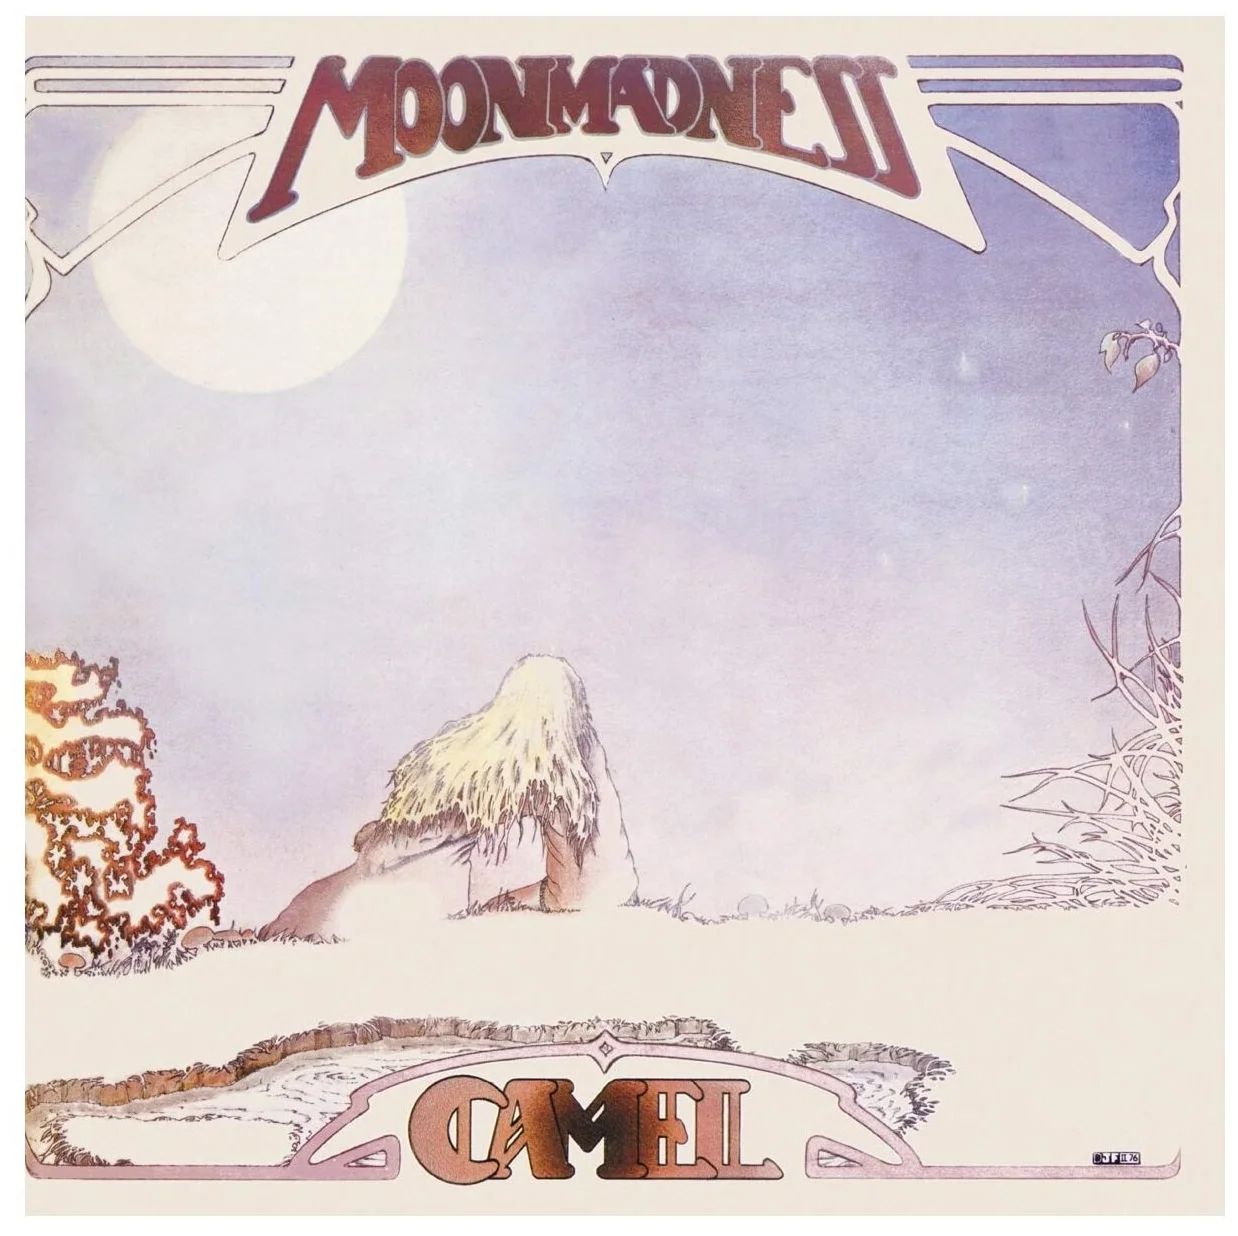 Виниловая пластинка Camel, Moonmadness (0602445682959) camel cd camel moonmadness deluxe